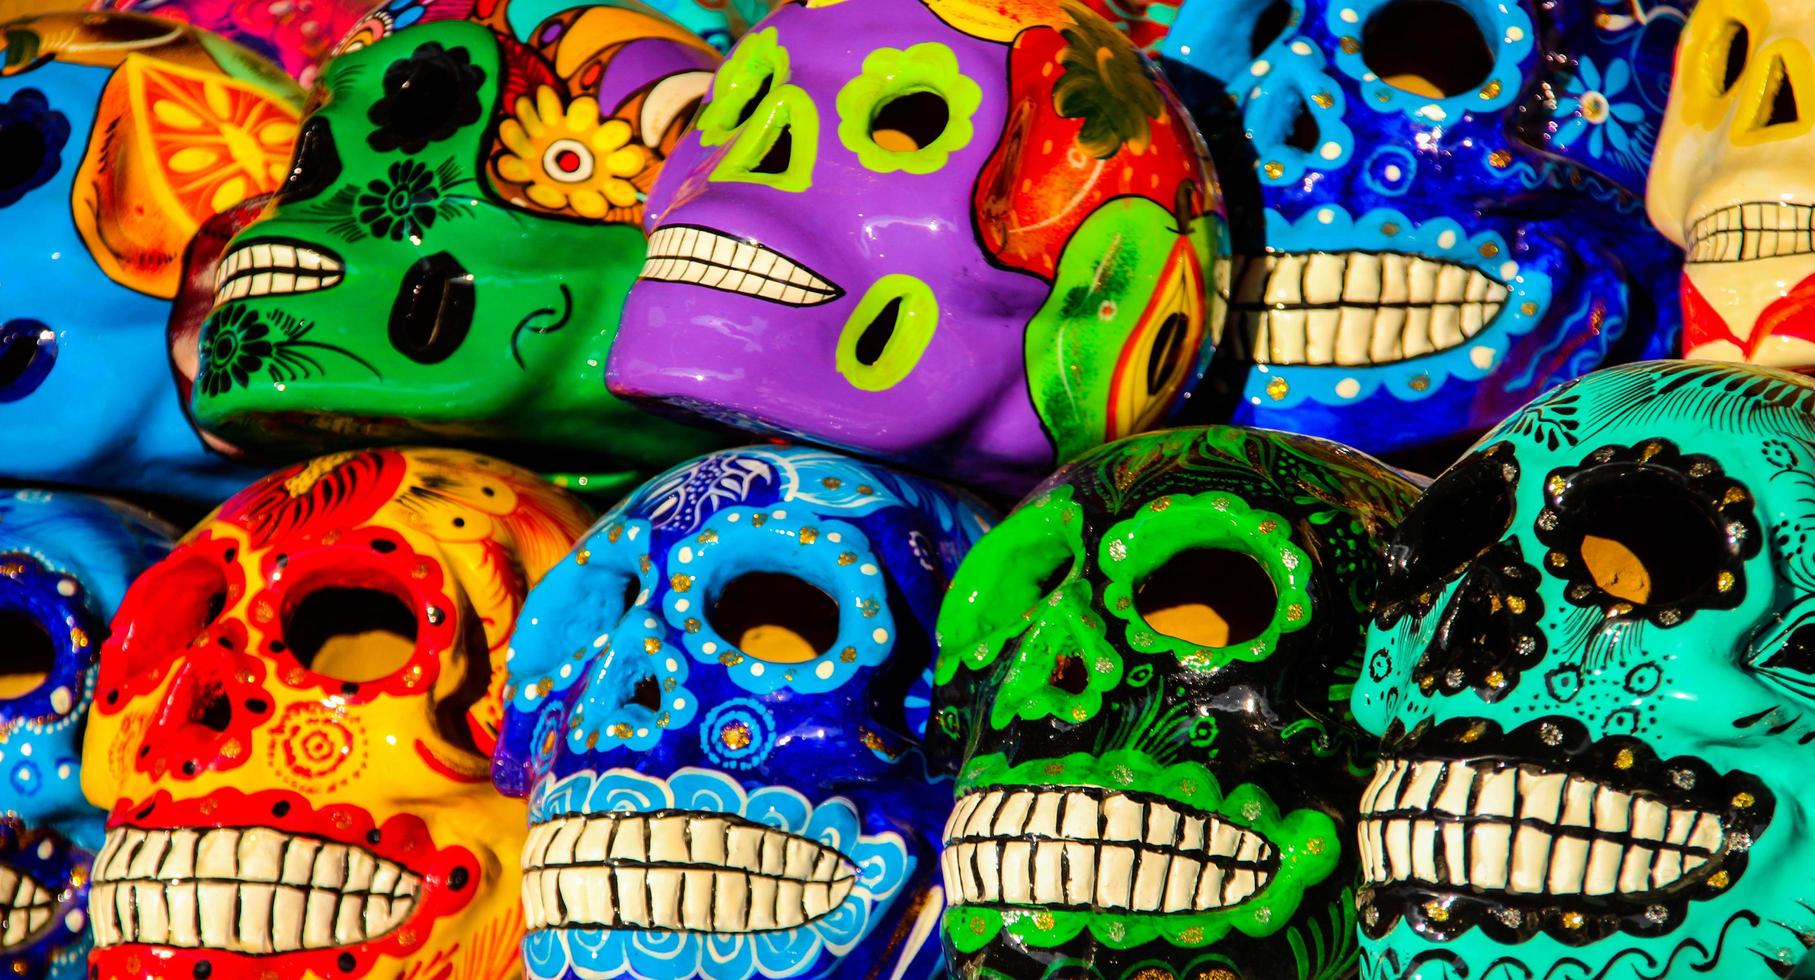 cabo san lucas, mexique, 8 août 2014 - calacas, jour du crâne en bois des masques morts sur le marché de cabo san lucas, mexique. les masques sont des symboles typiques représentant des calacas - des squelettes. photo